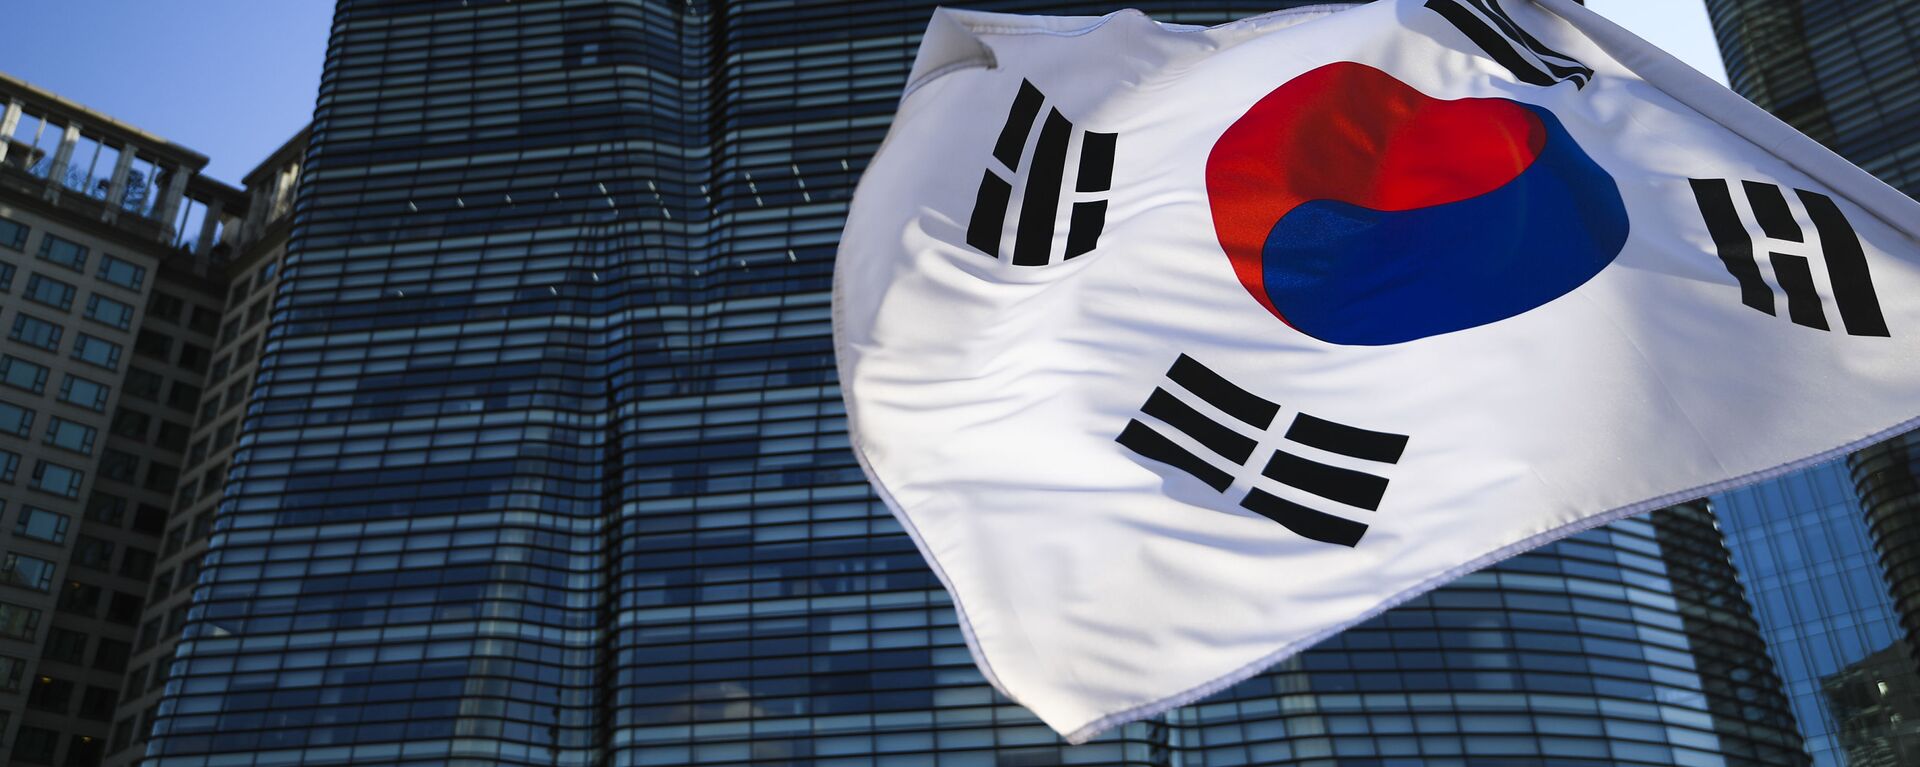 韓国の旗 - Sputnik 日本, 1920, 03.06.2021